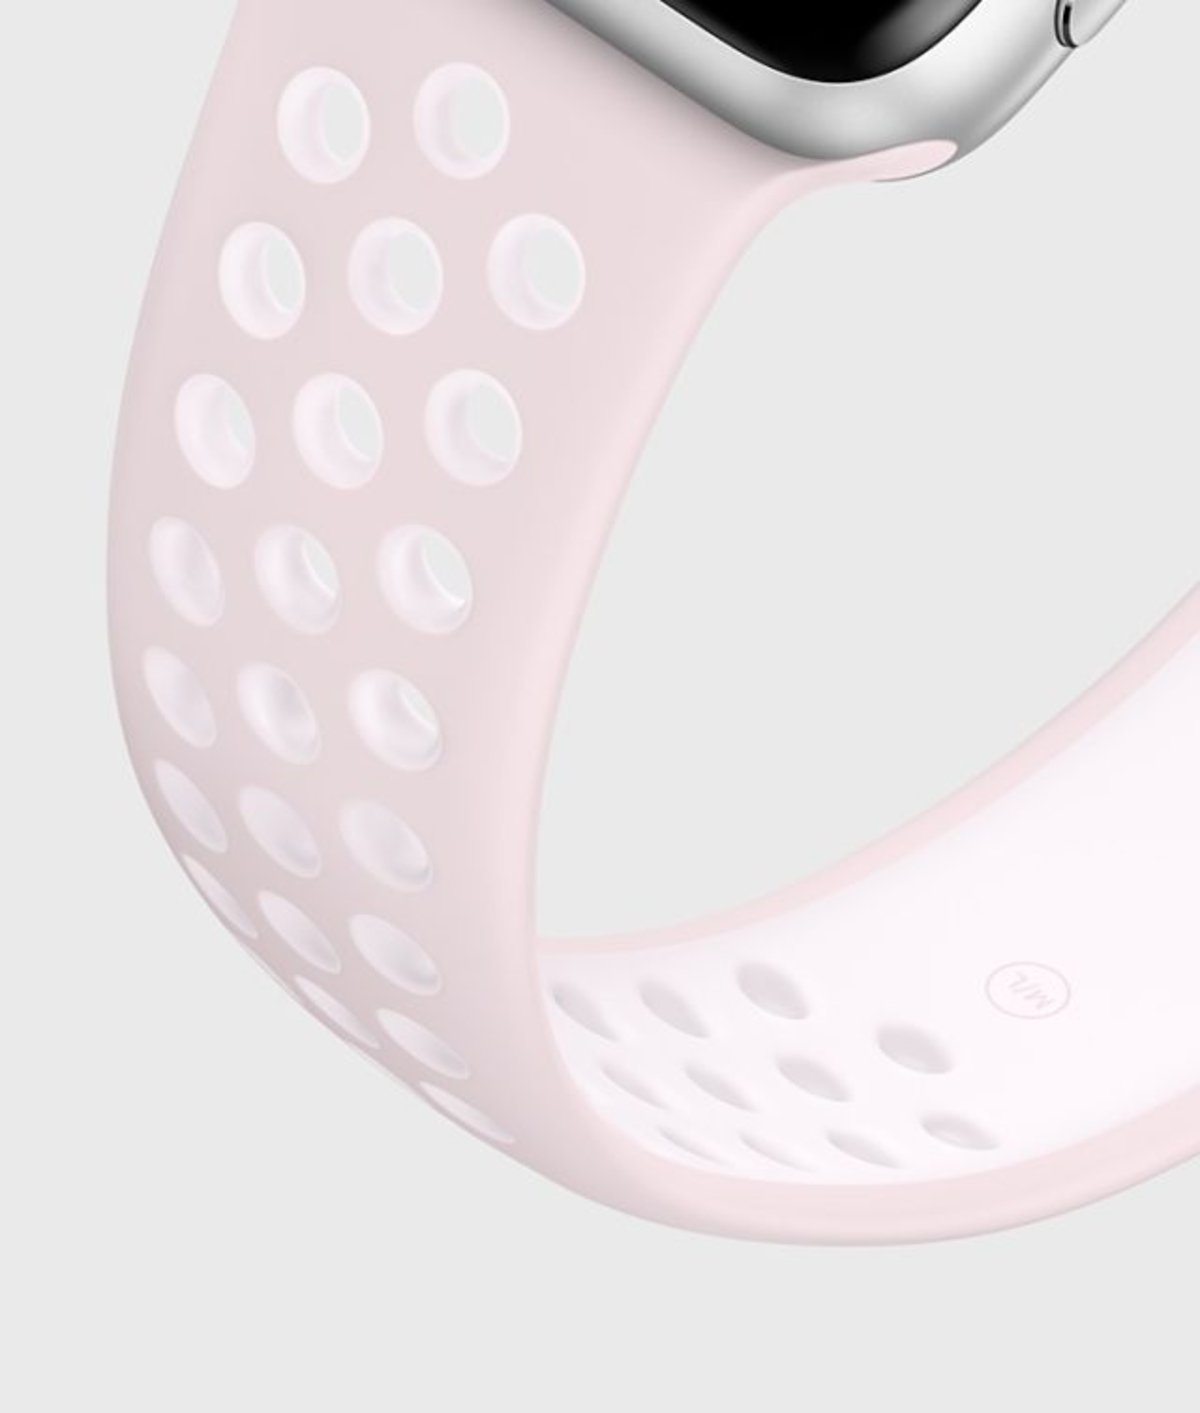 Ya puedes comprar nuevas correas para tu Apple Watch